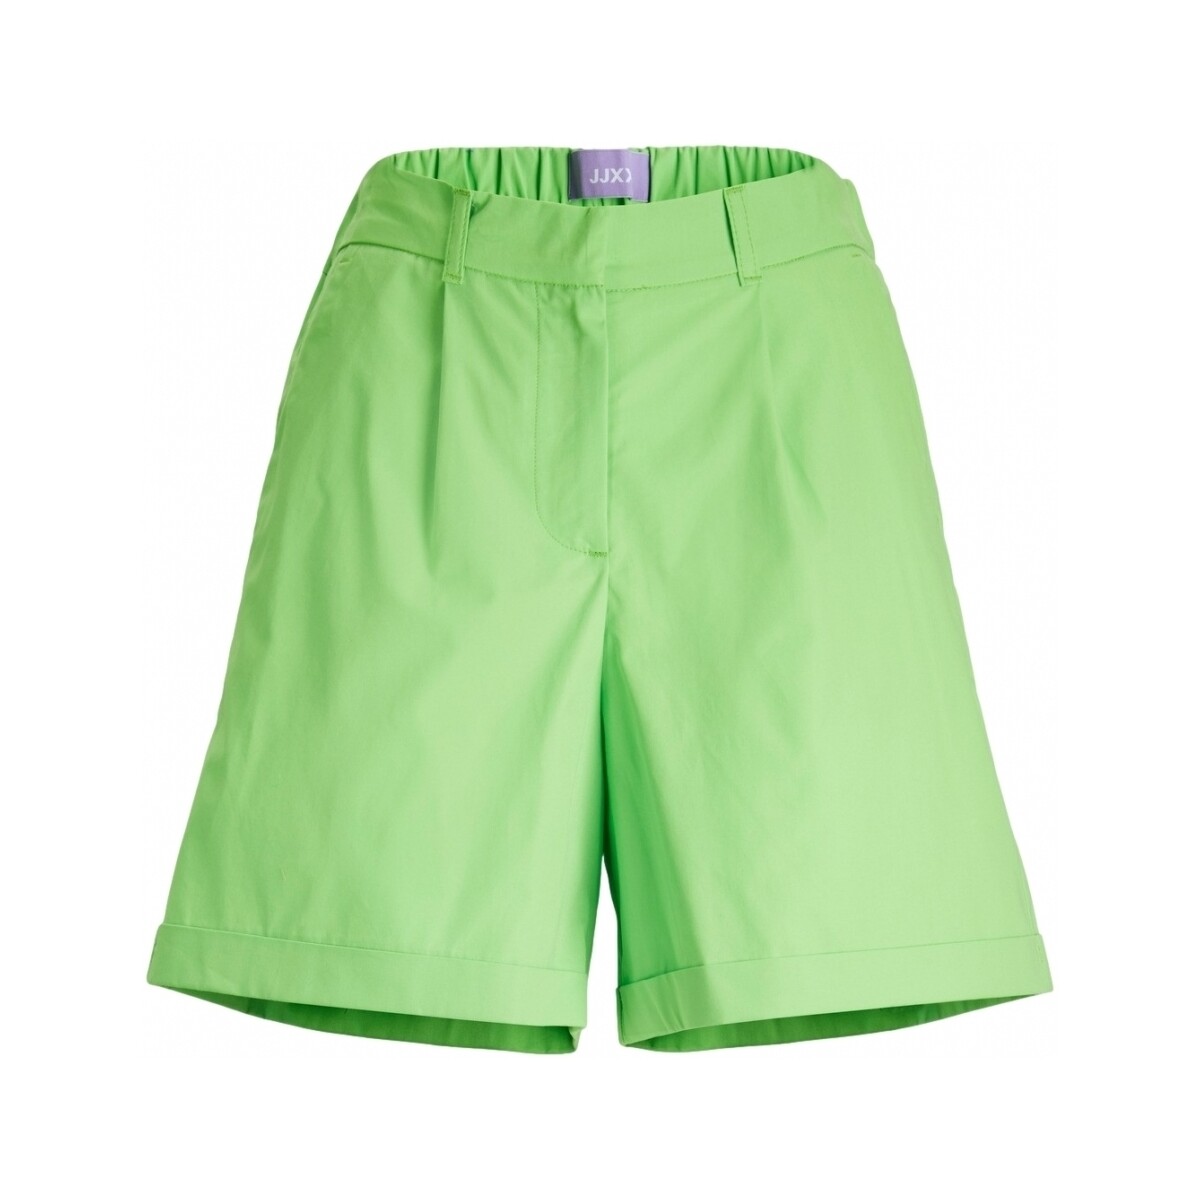 Shorts & Βερμούδες Jjxx Shorts Vigga Rlx – Lime Punch